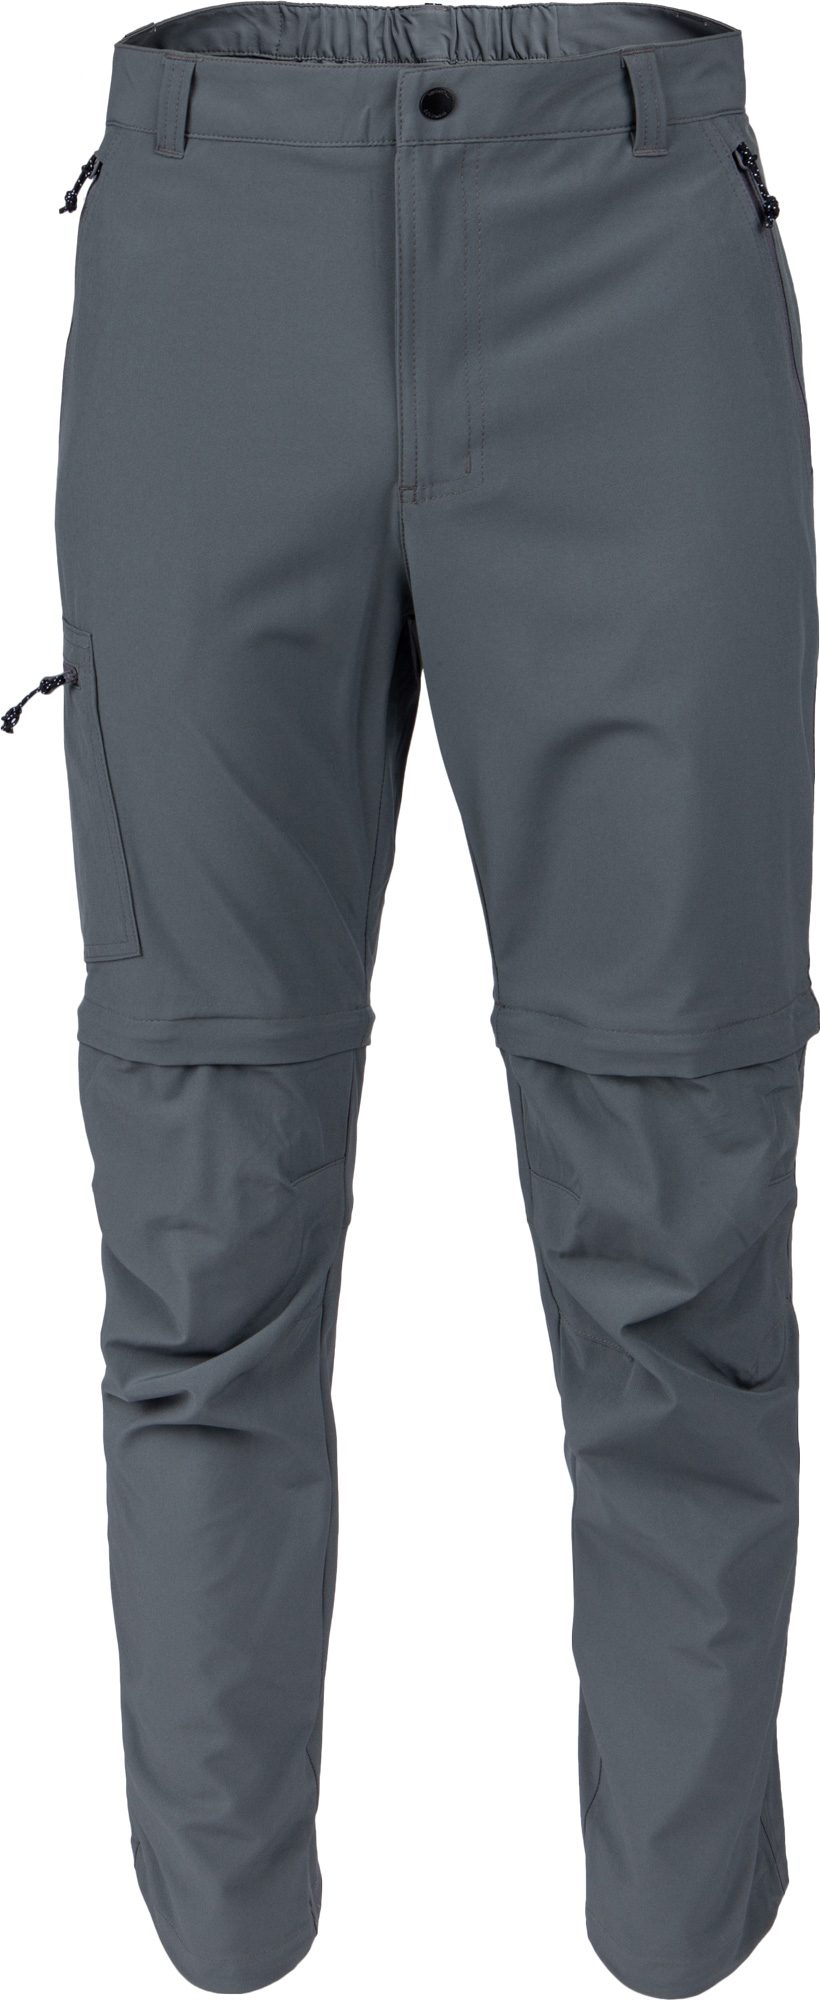 Men's outdoor pants